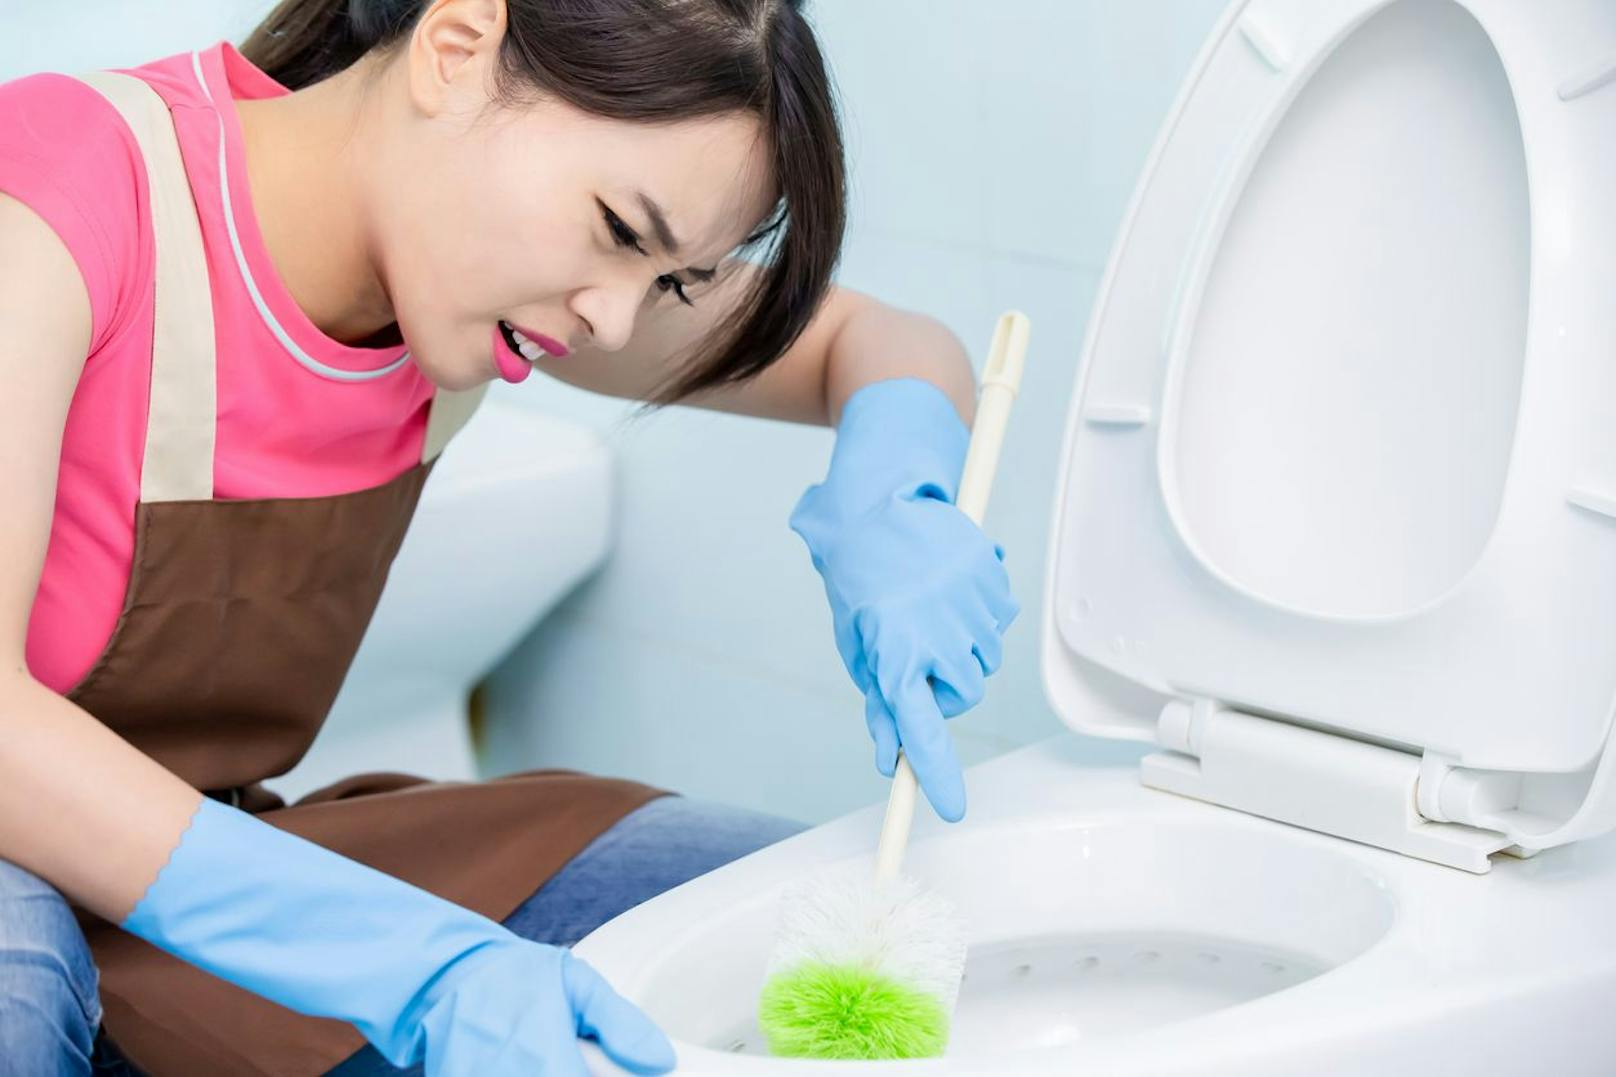 An vierter Stelle ärgern sich 69 Prozent der Frauen über die mangelnde Treffsicherheit beim Urinieren.